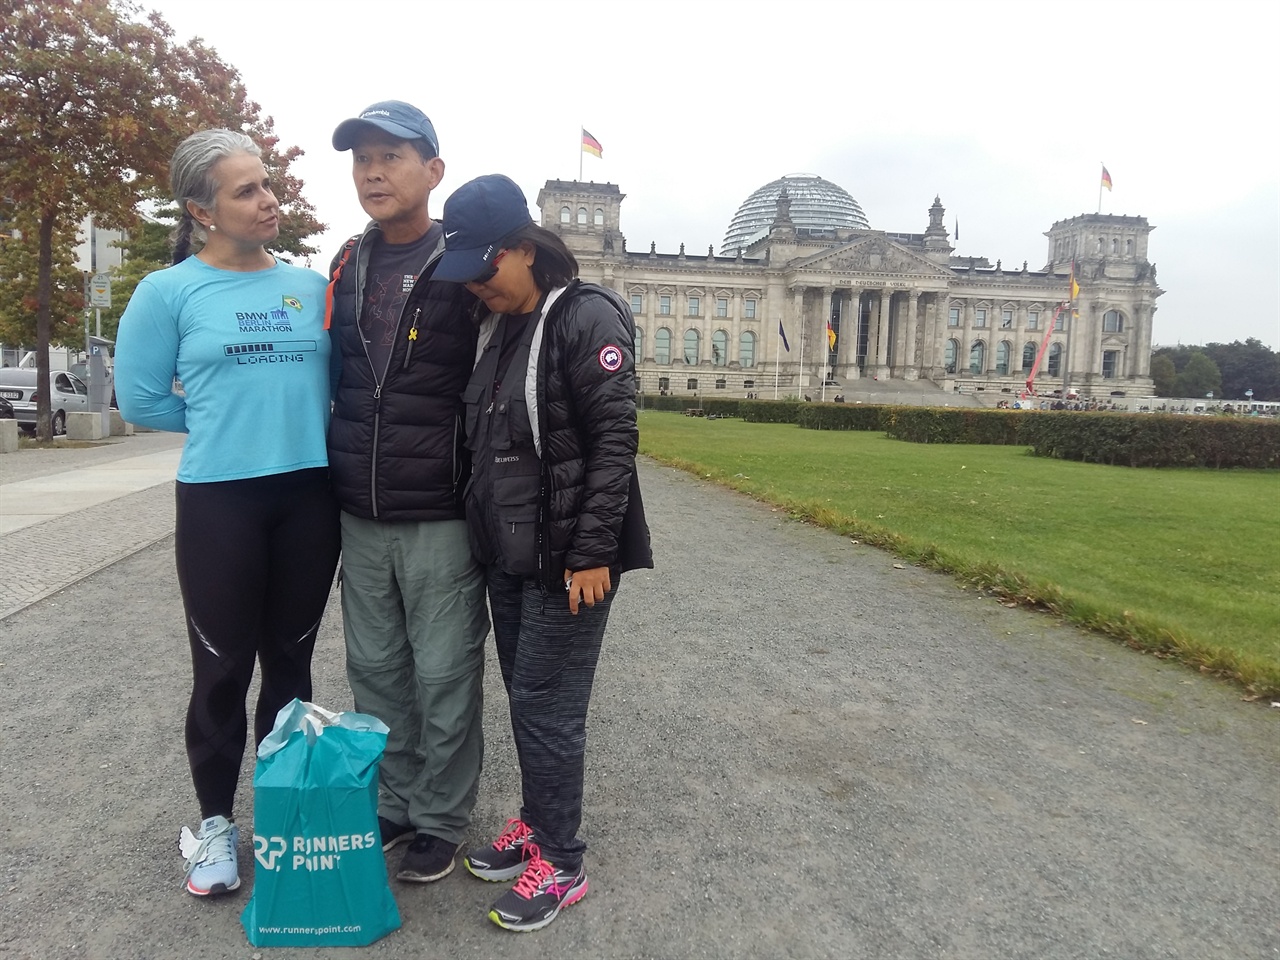 베를린 국회의사당 앞에서 만나 베를린 마라톤 참가차 온 브라질 마라토너와 함께